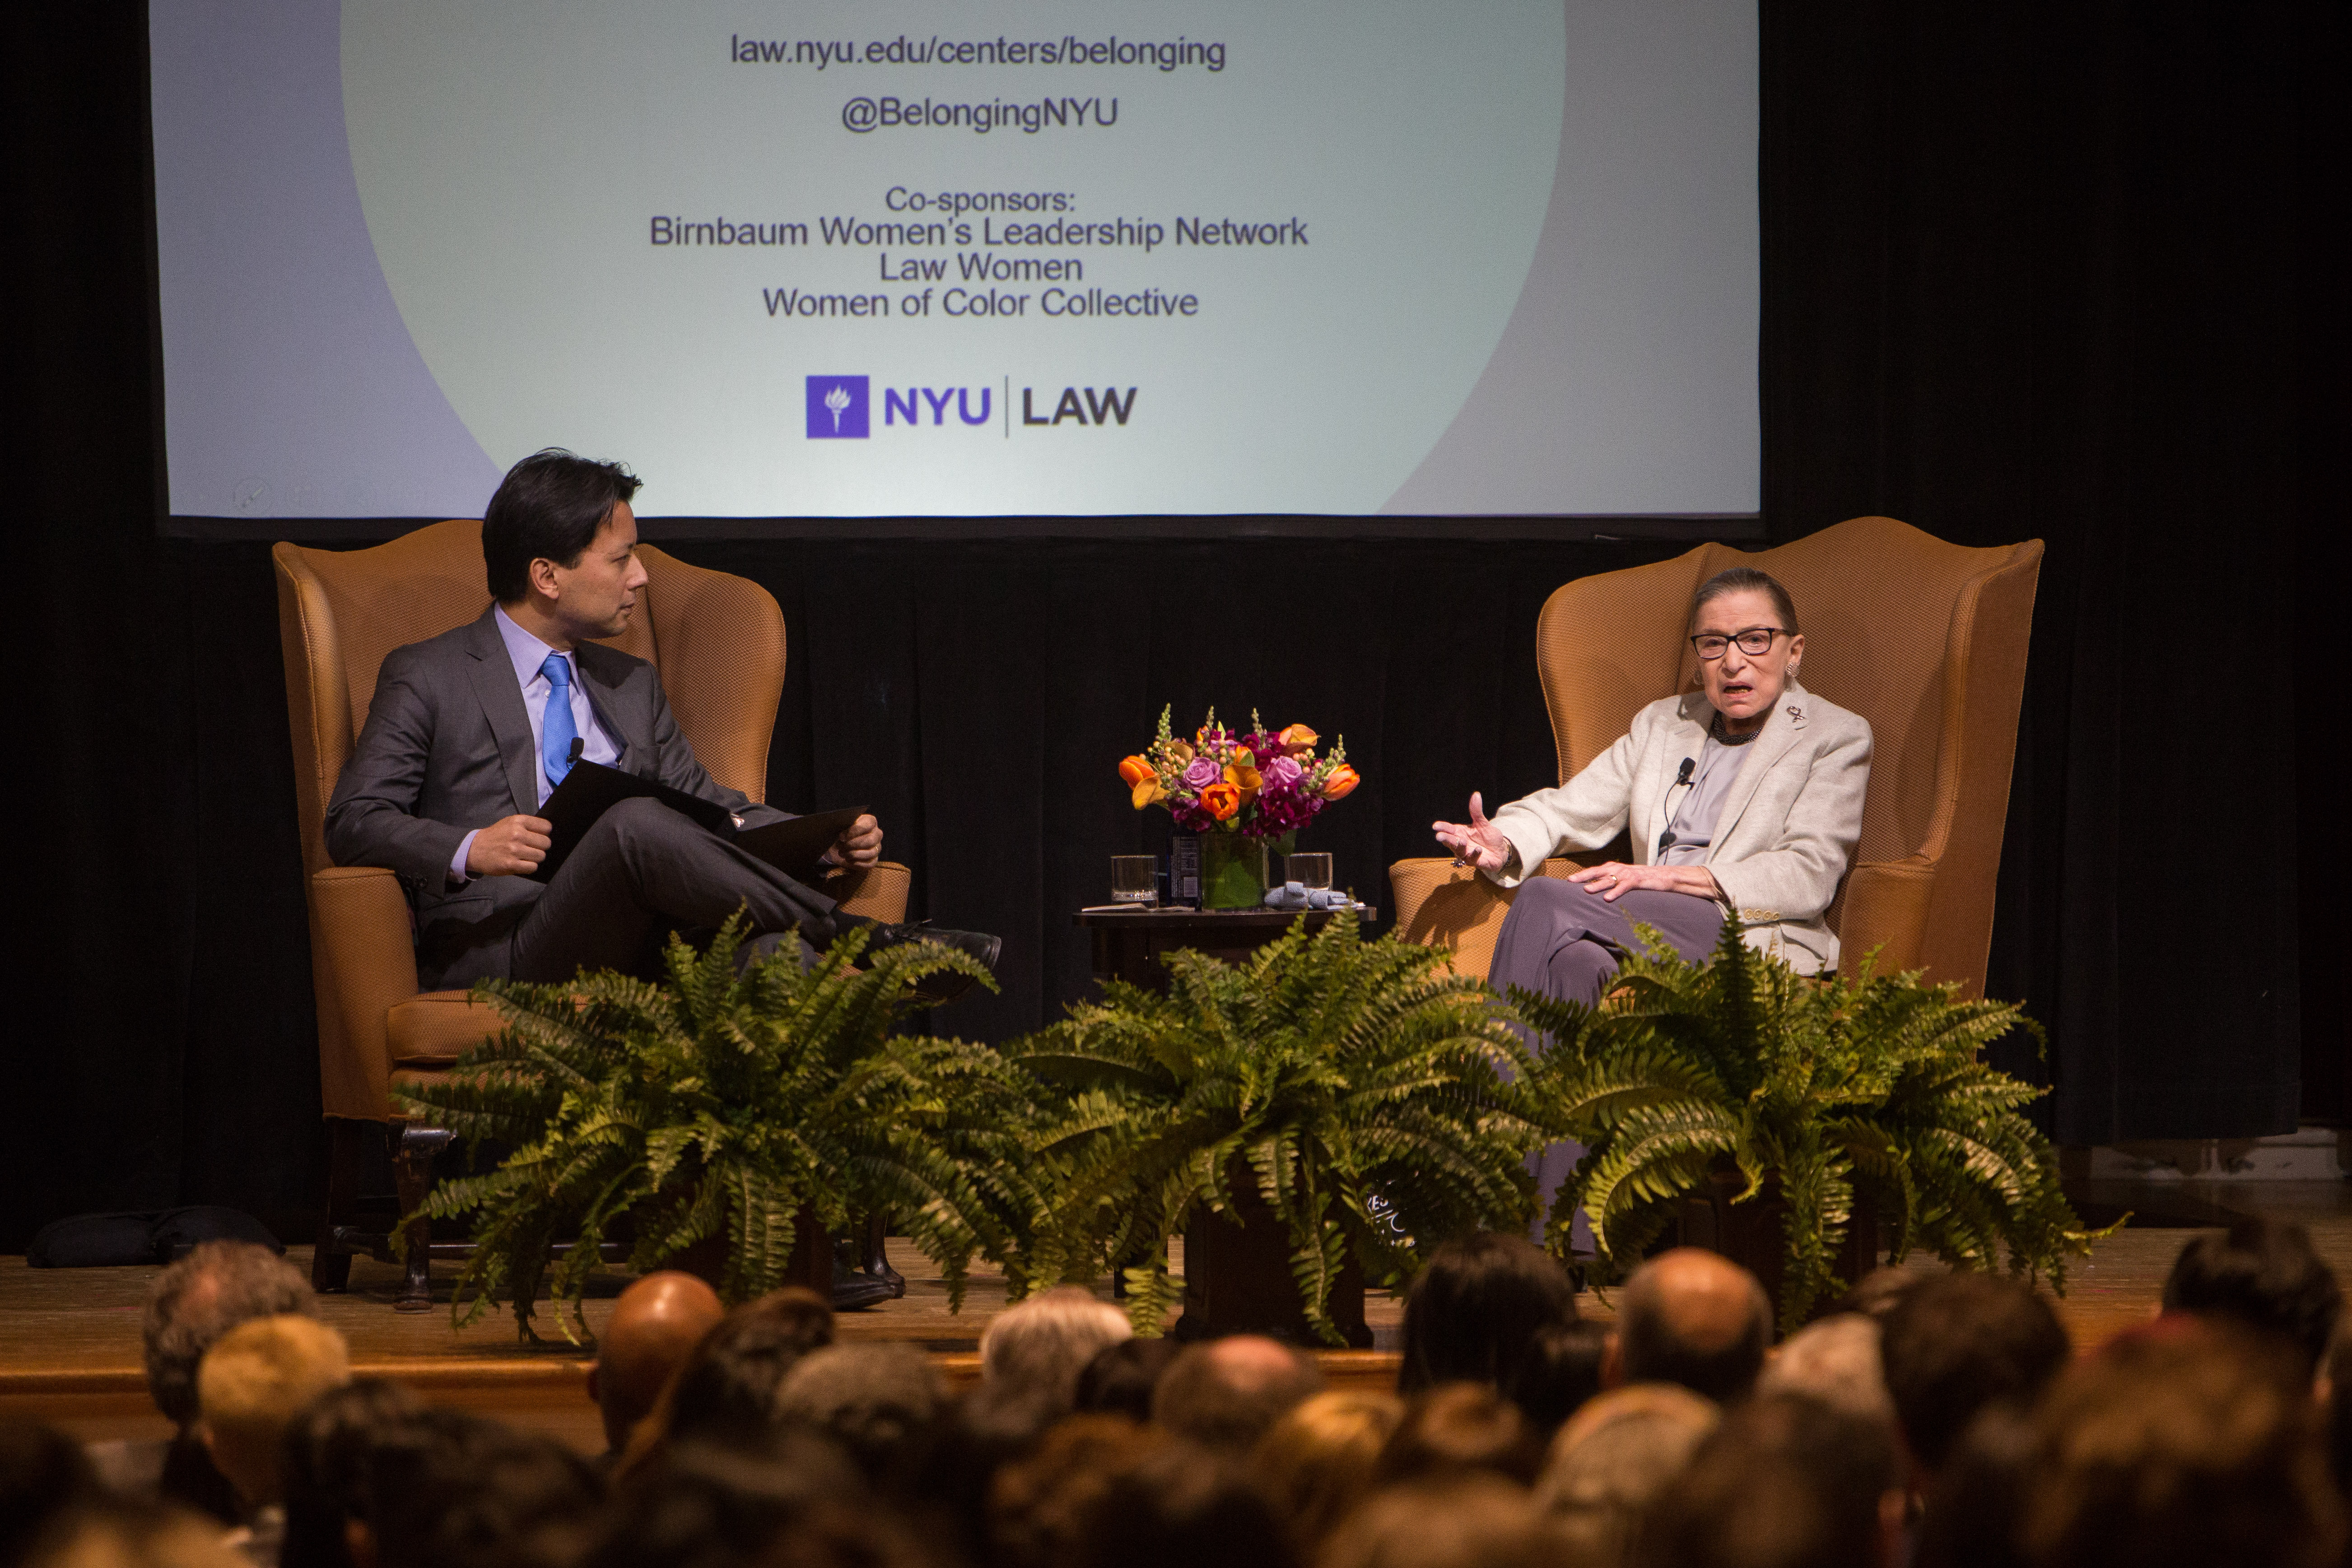 Kenji Yoshino and Justice Ruth Bader Ginsburg engage in conversation